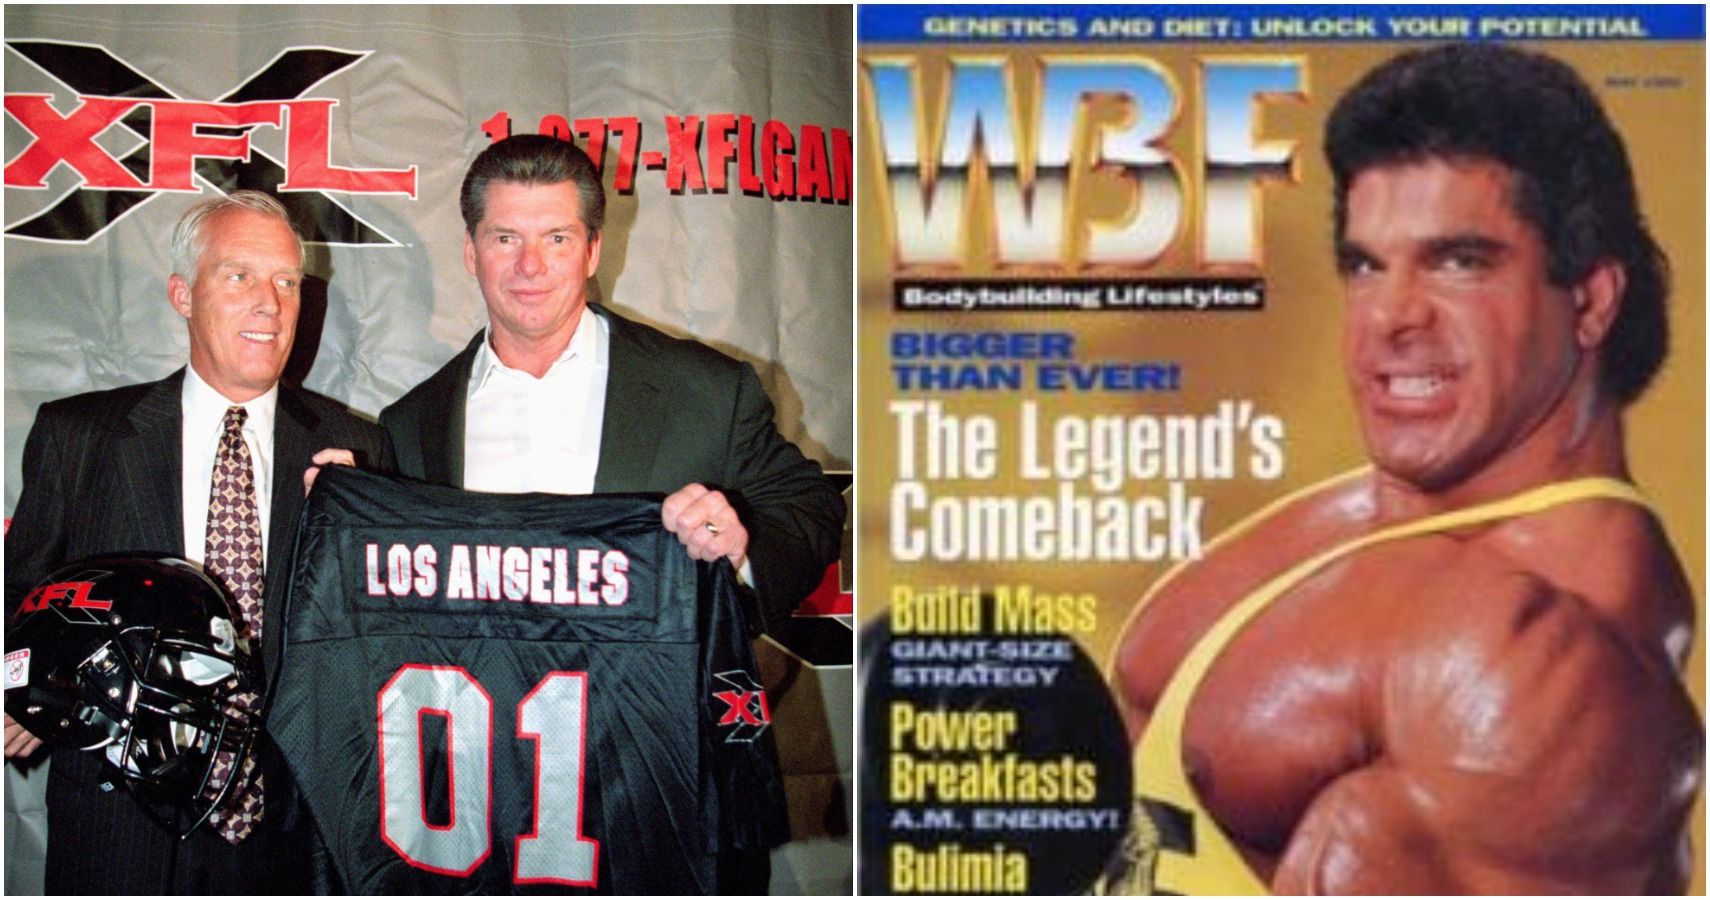 Vince McMahon WBF XFL Business Failures